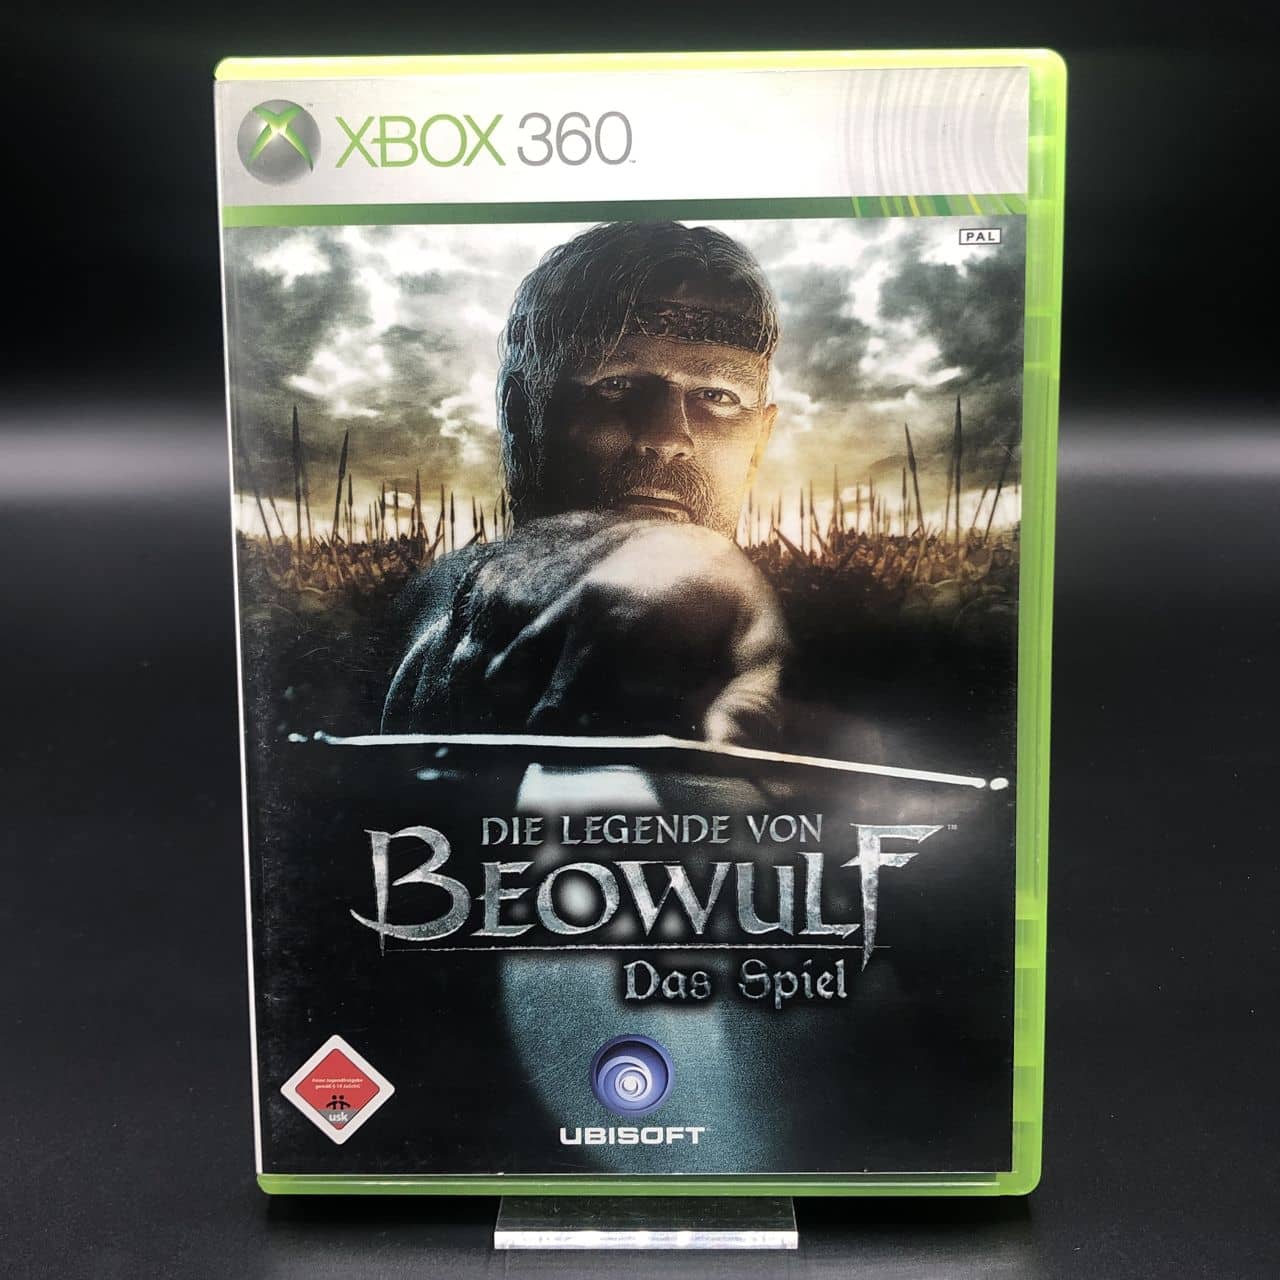 Die Legende von Beowulf - Das Spiel (Komplett) (Sehr gut) XBOX 360 (FSK18)